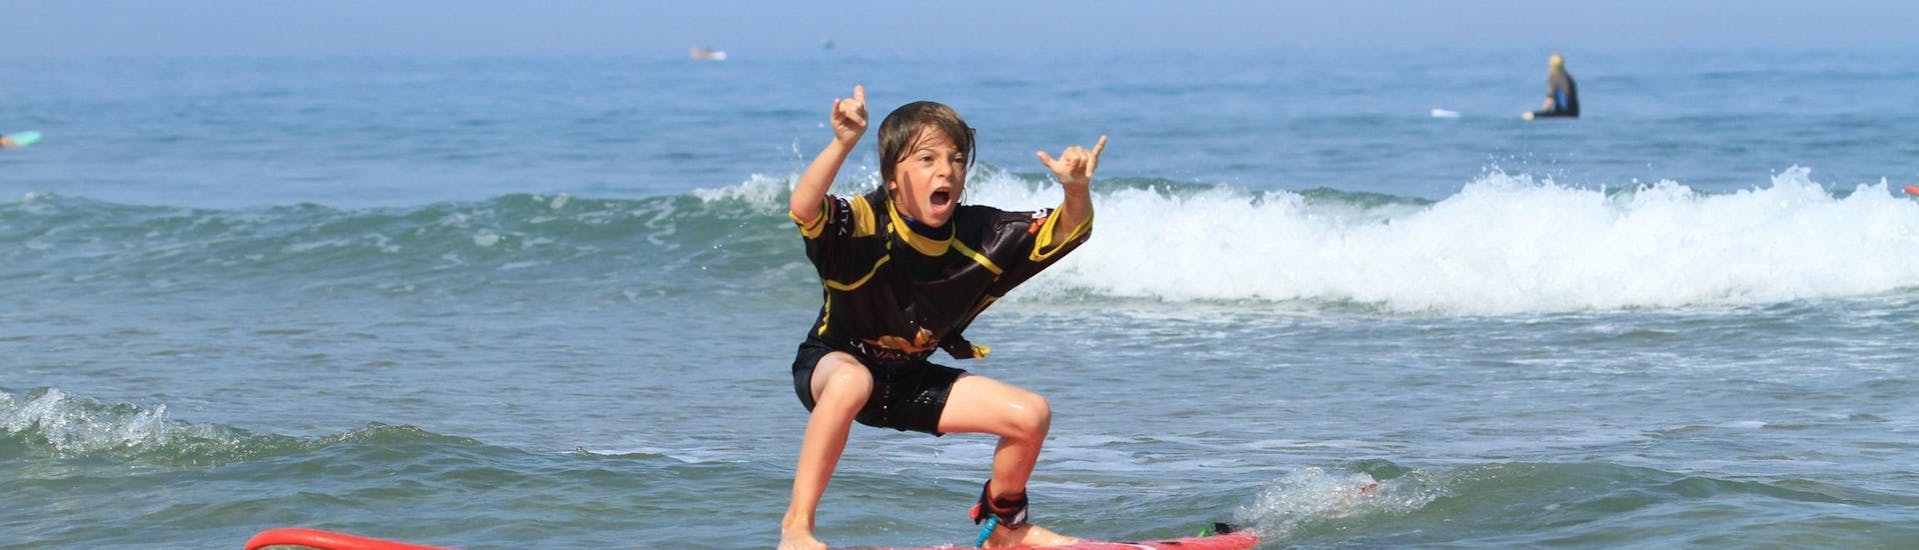 Un enfant est fier de se tenir debout sur sa planche de surf grâce aux leçons de surf pour enfants sur la plage de la Côte des Basques avec La Vague Basque.